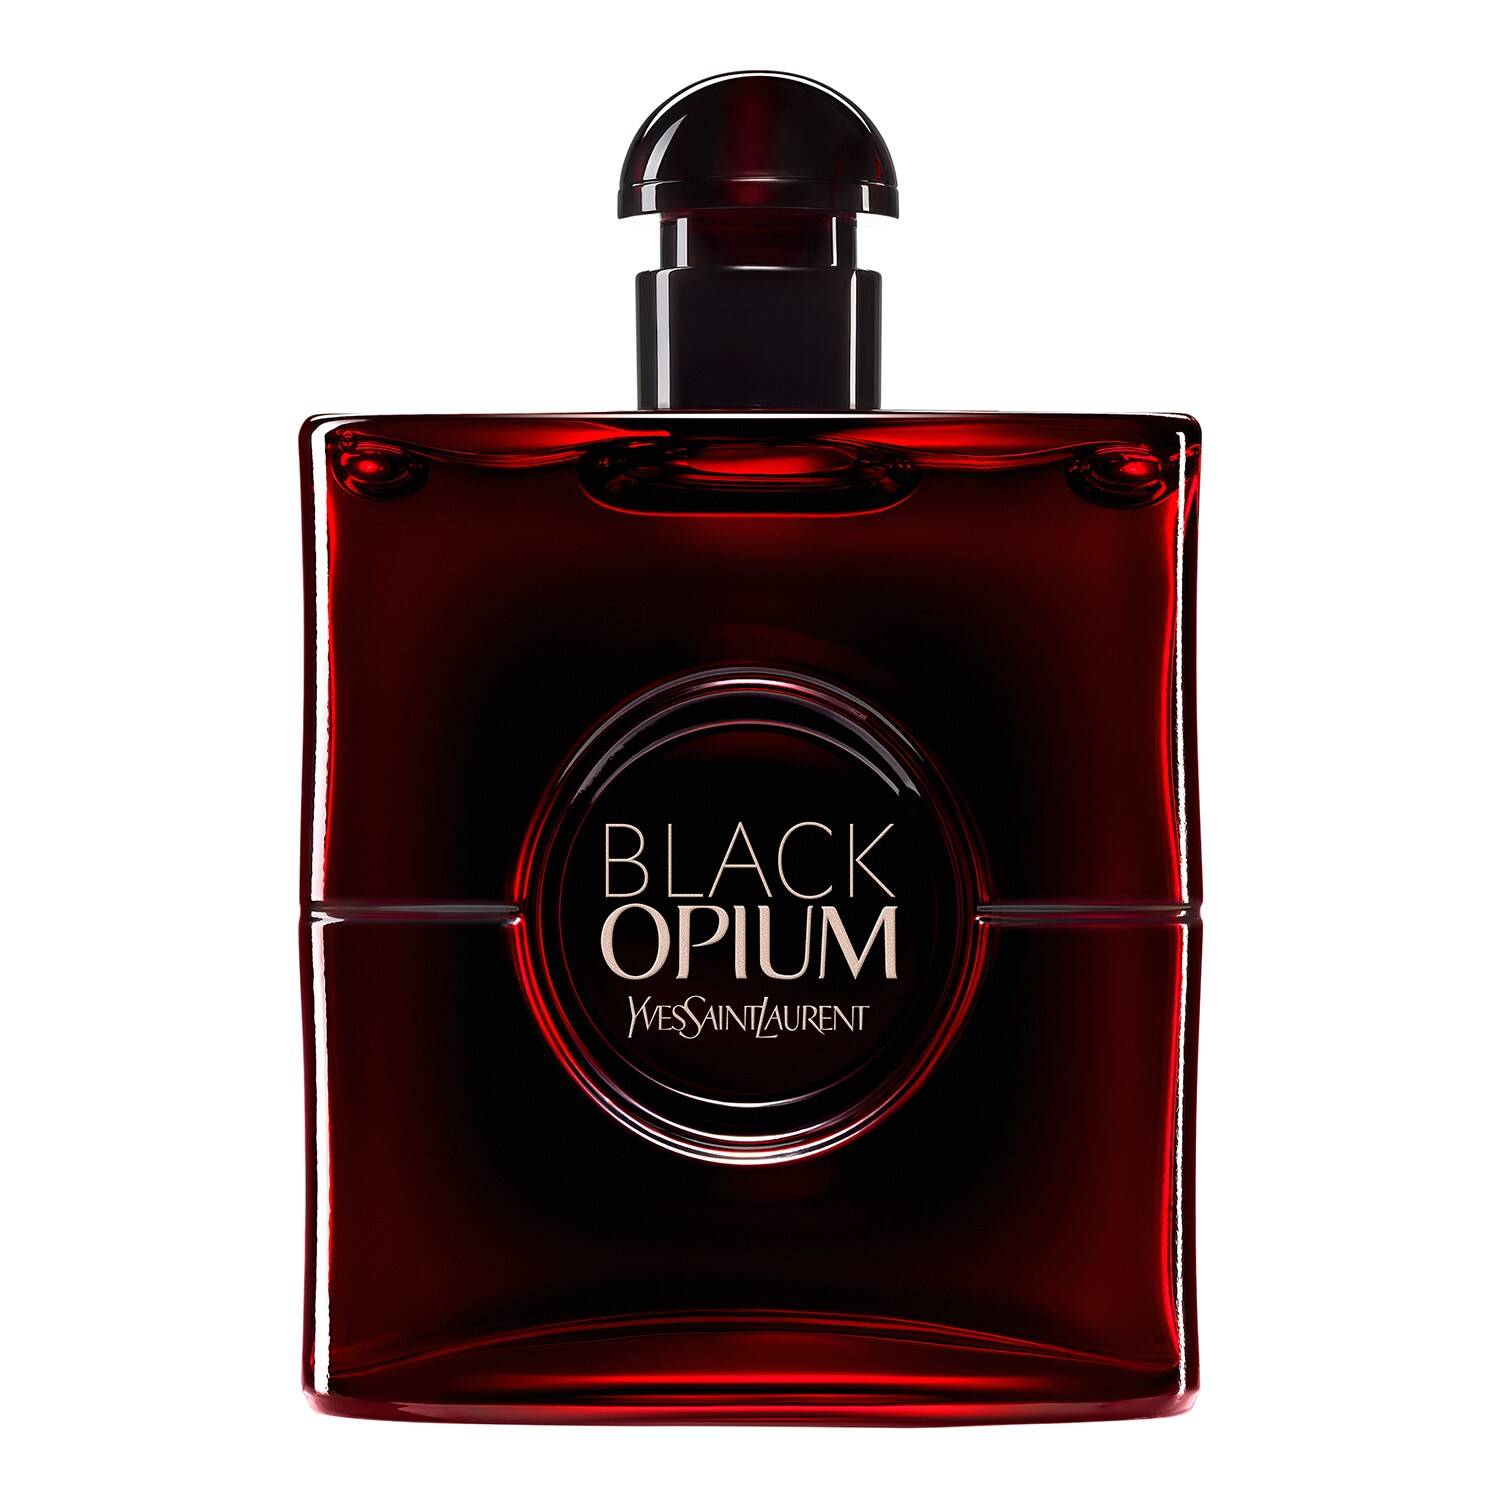 YVES SAINT LAURENT Black Opium Eau de Parfum Over Red 90ml